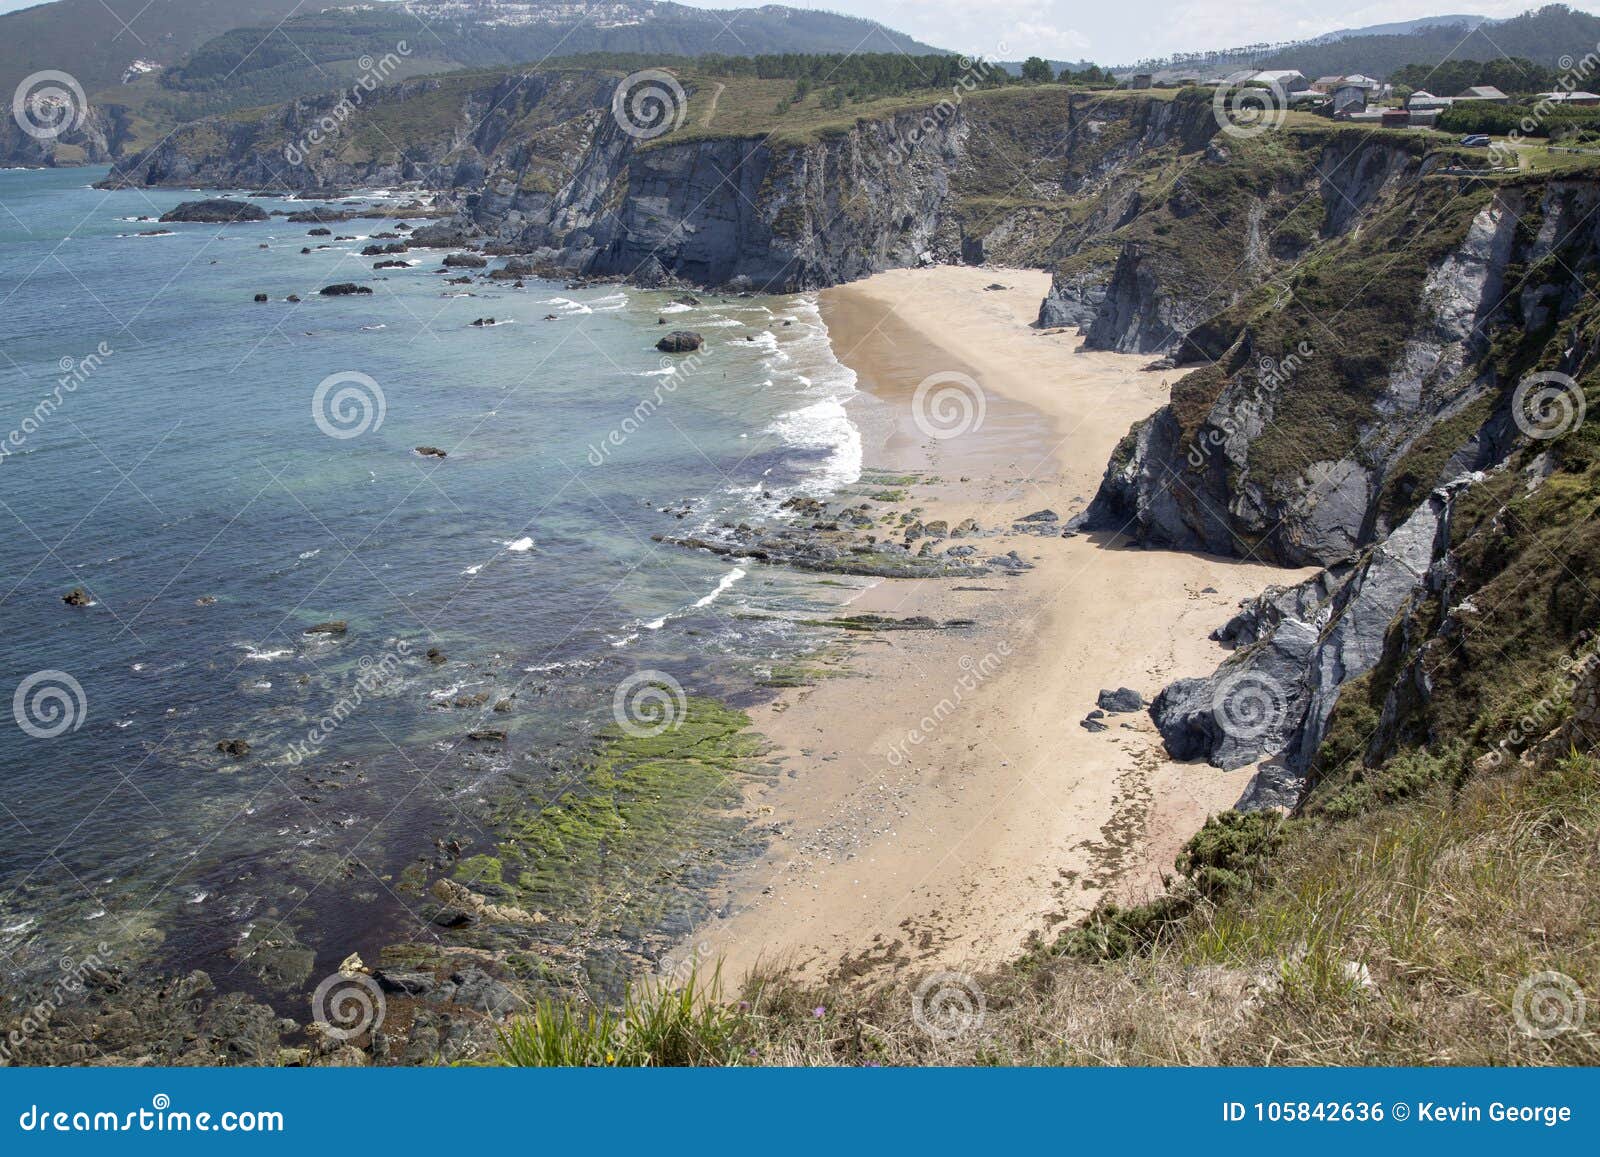 picon beach; loiba; galicia